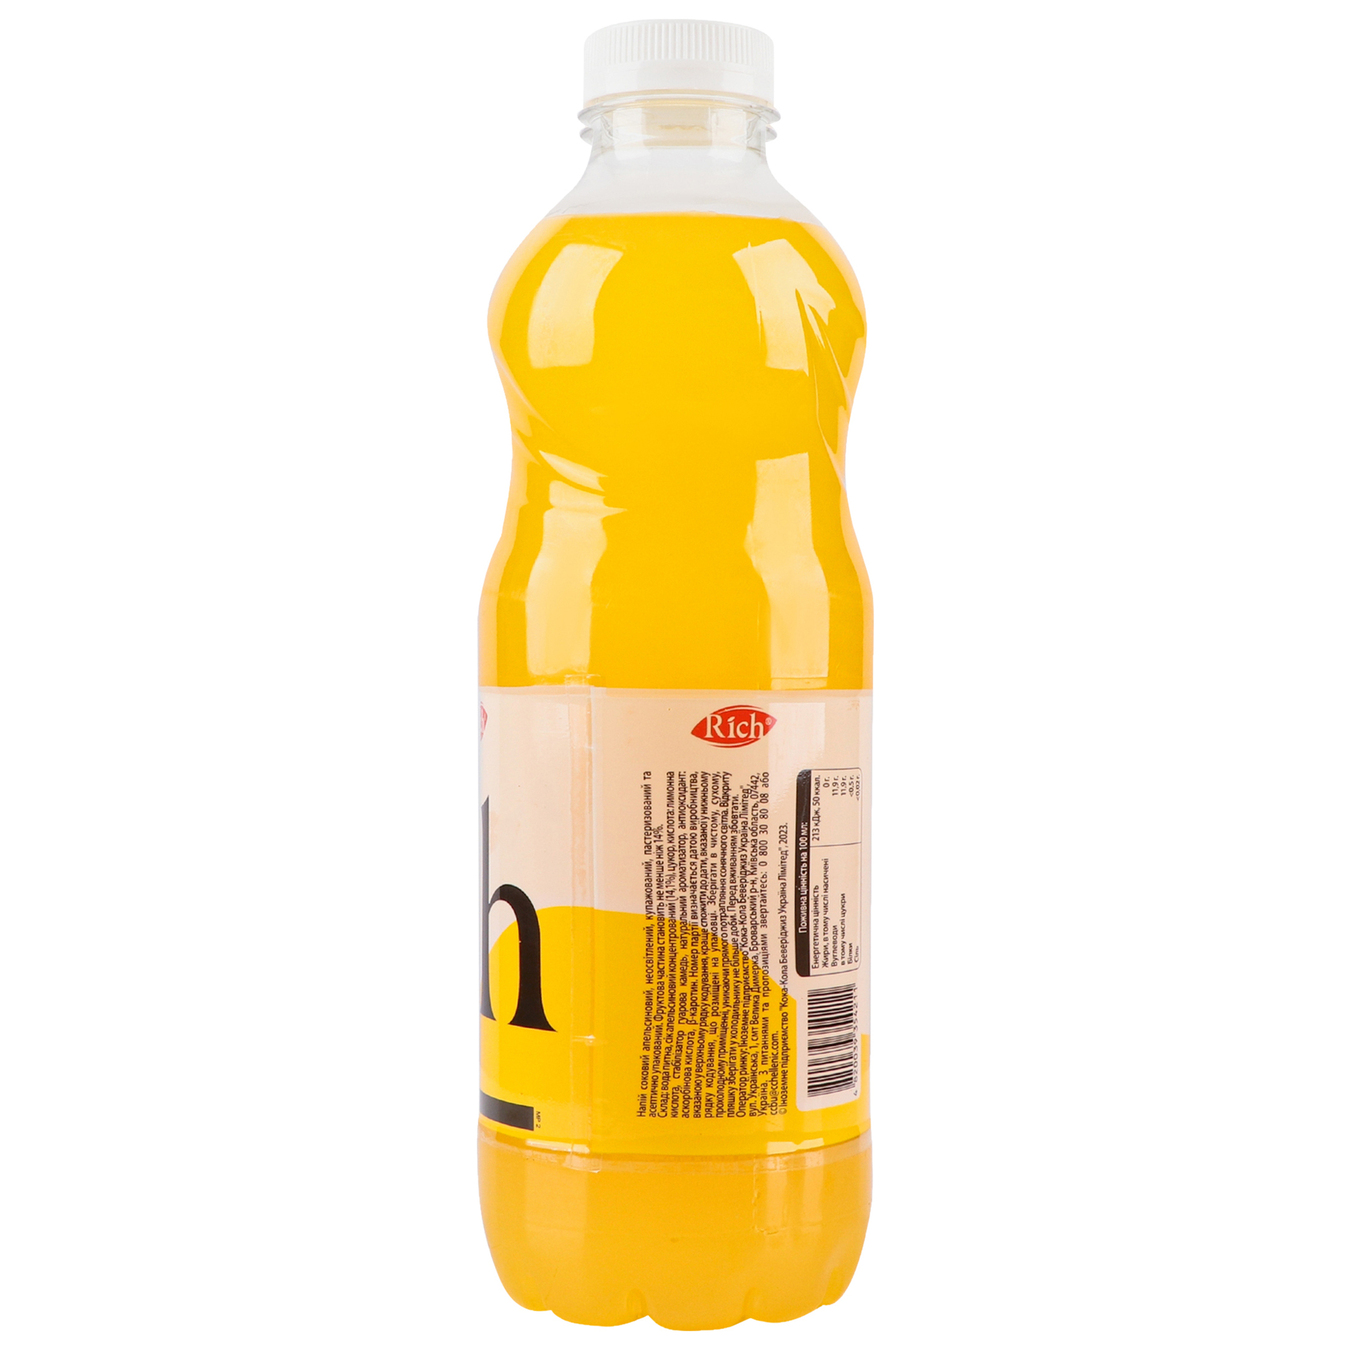 Juice drink Rich orange 1 liter 4